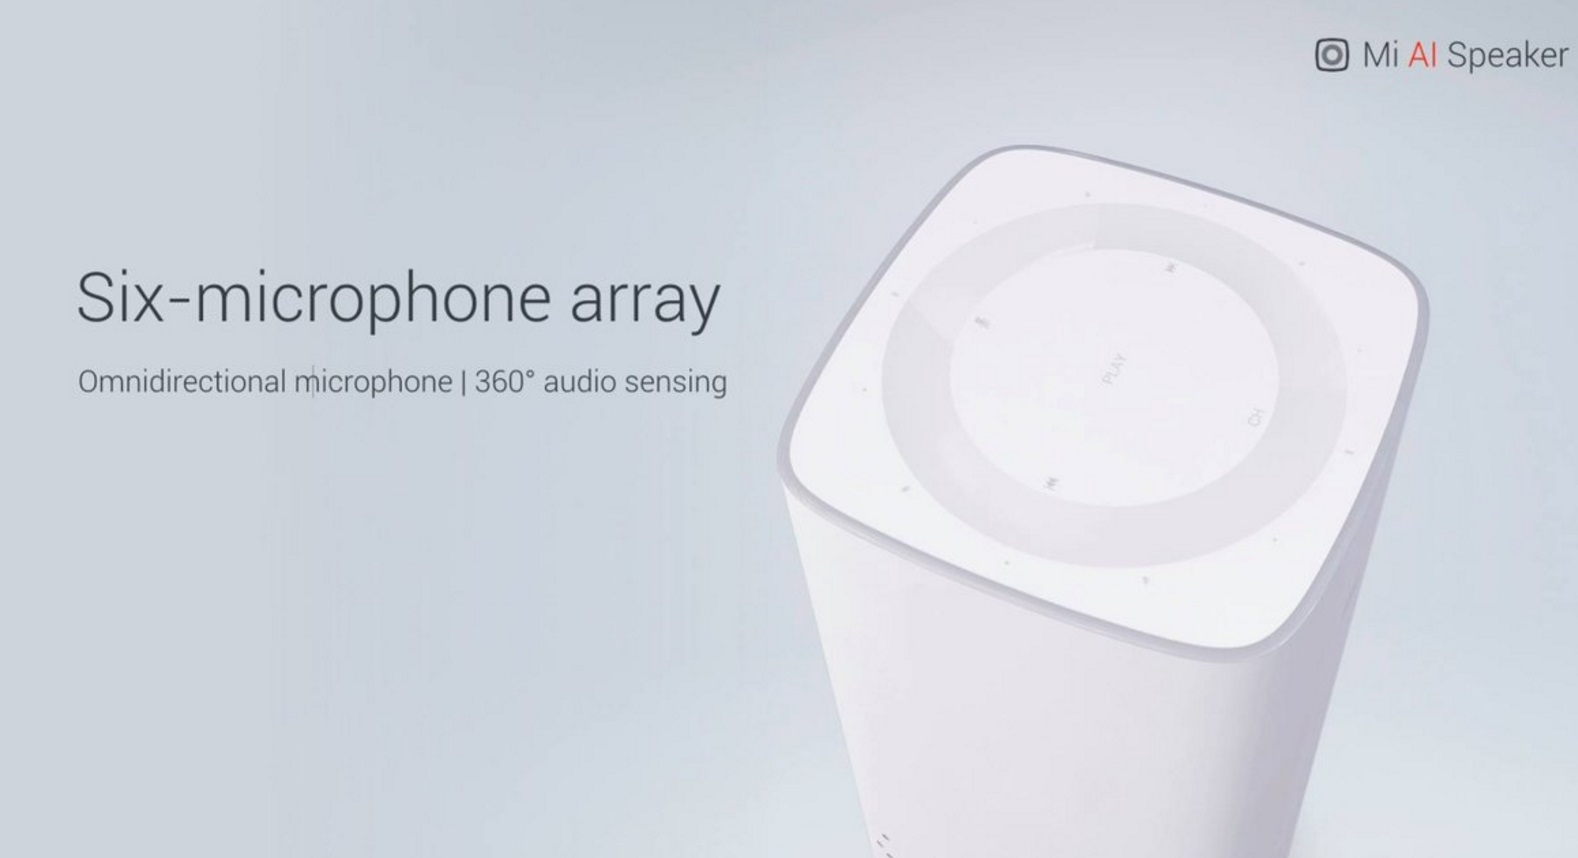 Xiaomi apresentou o alto-falante “Mi IA Speaker” que possui seis microfones para captar comandos de voz